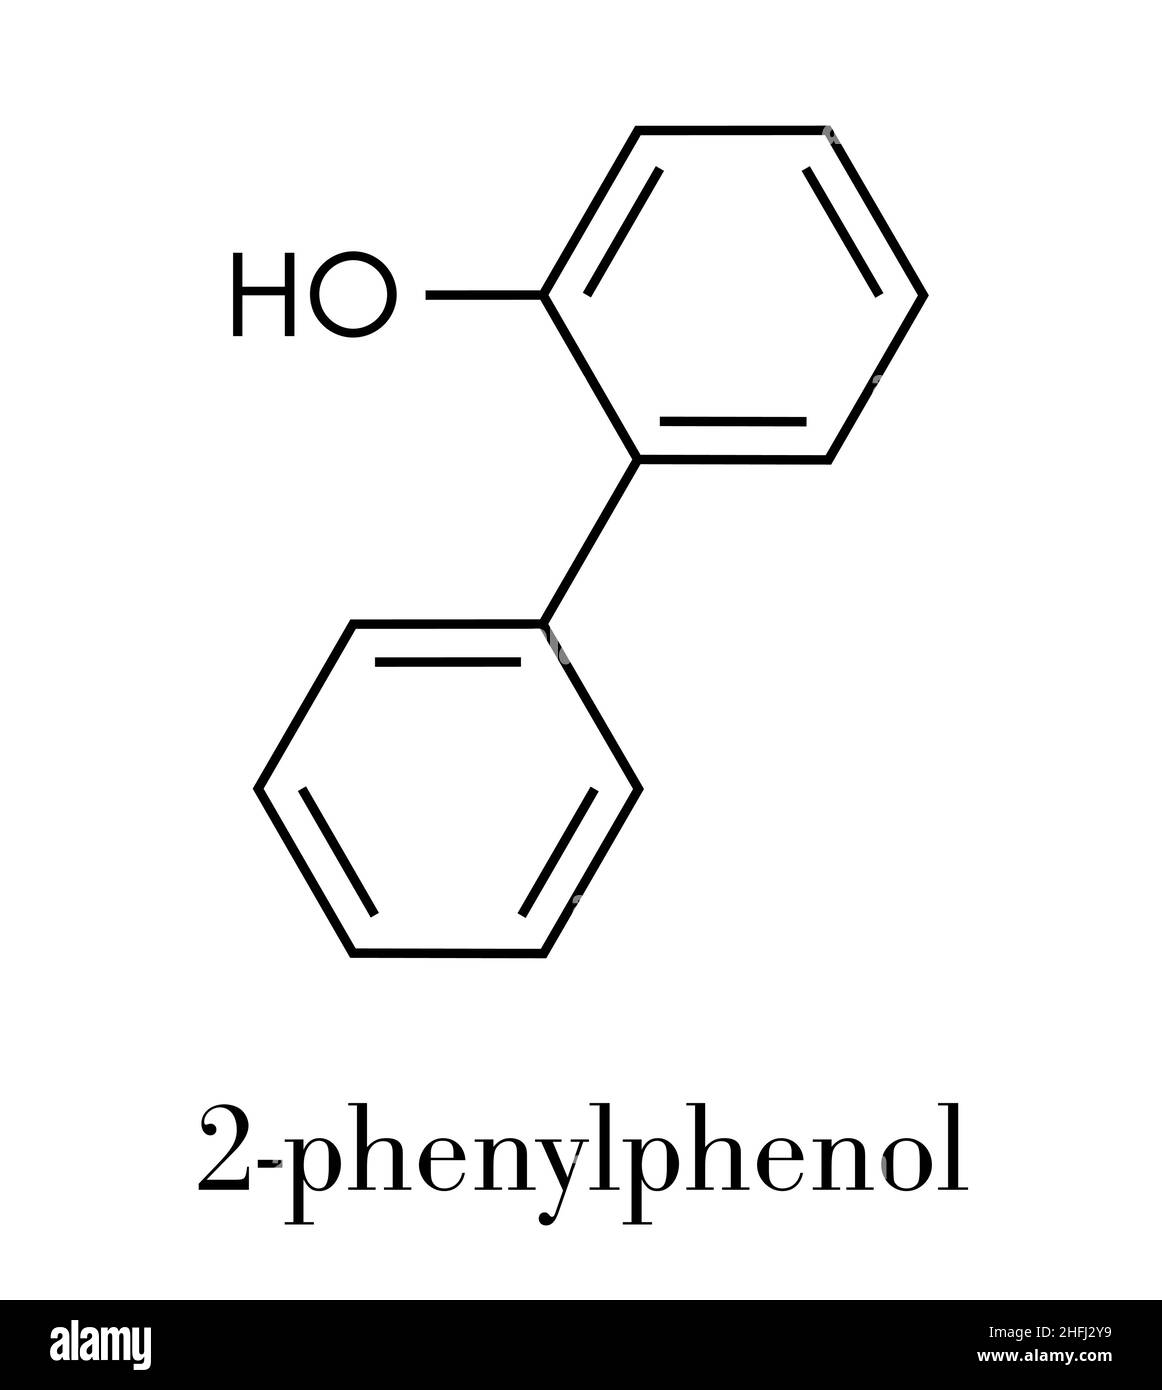 2-phenylphenol Konservierungsmittel Molekül. Biozid verwendet als Lebensmittelzusatzstoff, Konservierungsmittel, und Desinfektionsmittel. Skelettmuskulatur Formel. Stock Vektor